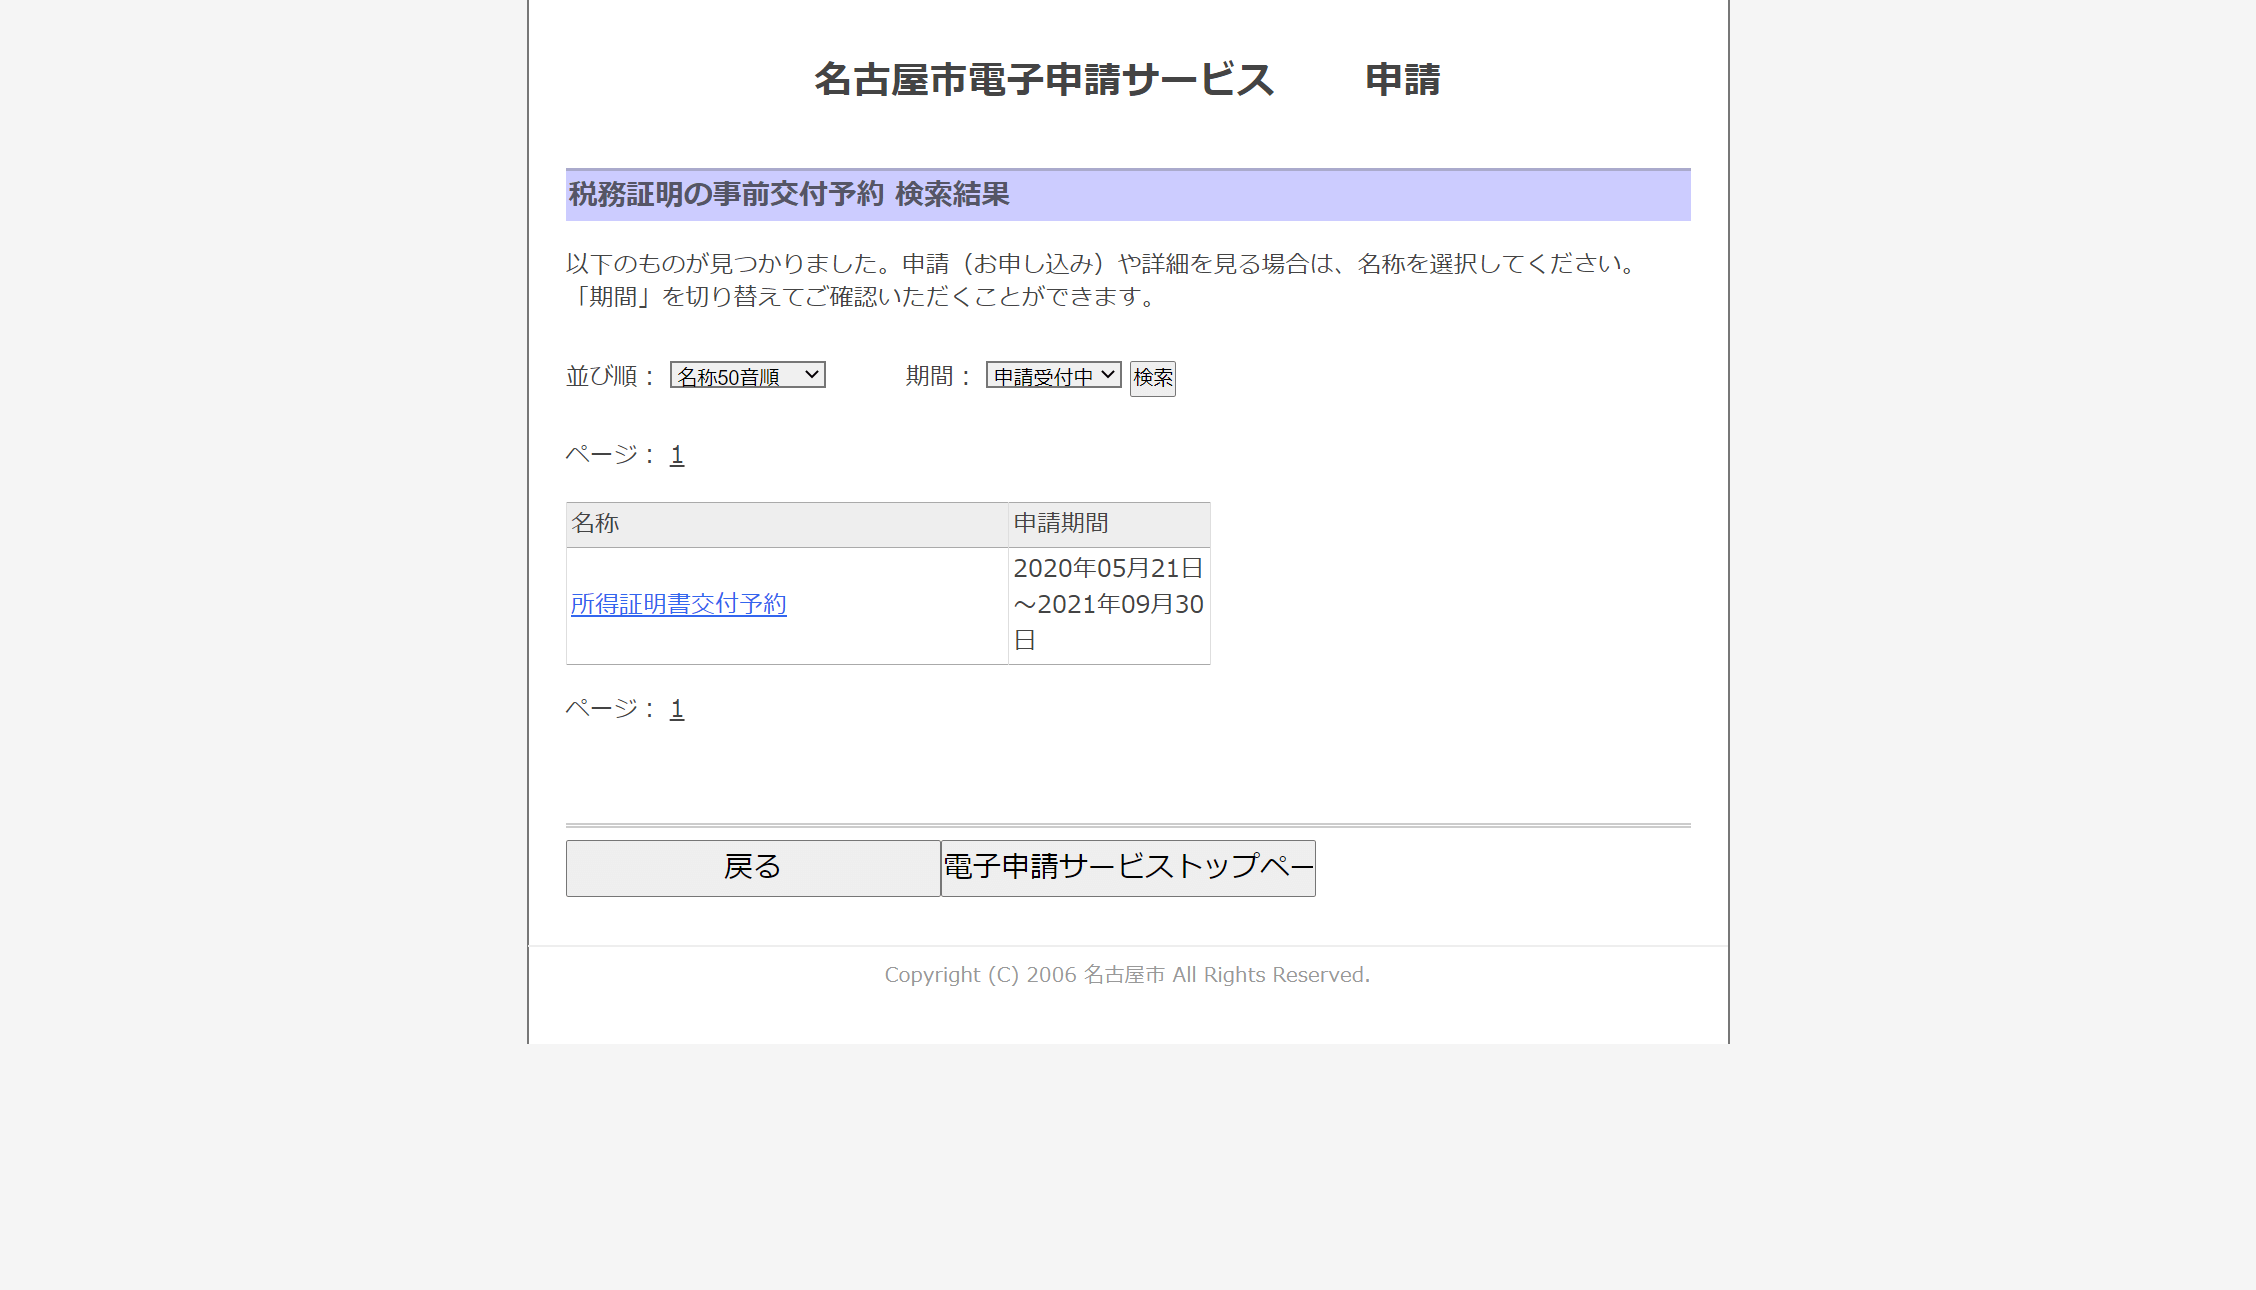 【名古屋市】所得証明書の取得は電子申請による予約サービスが便利